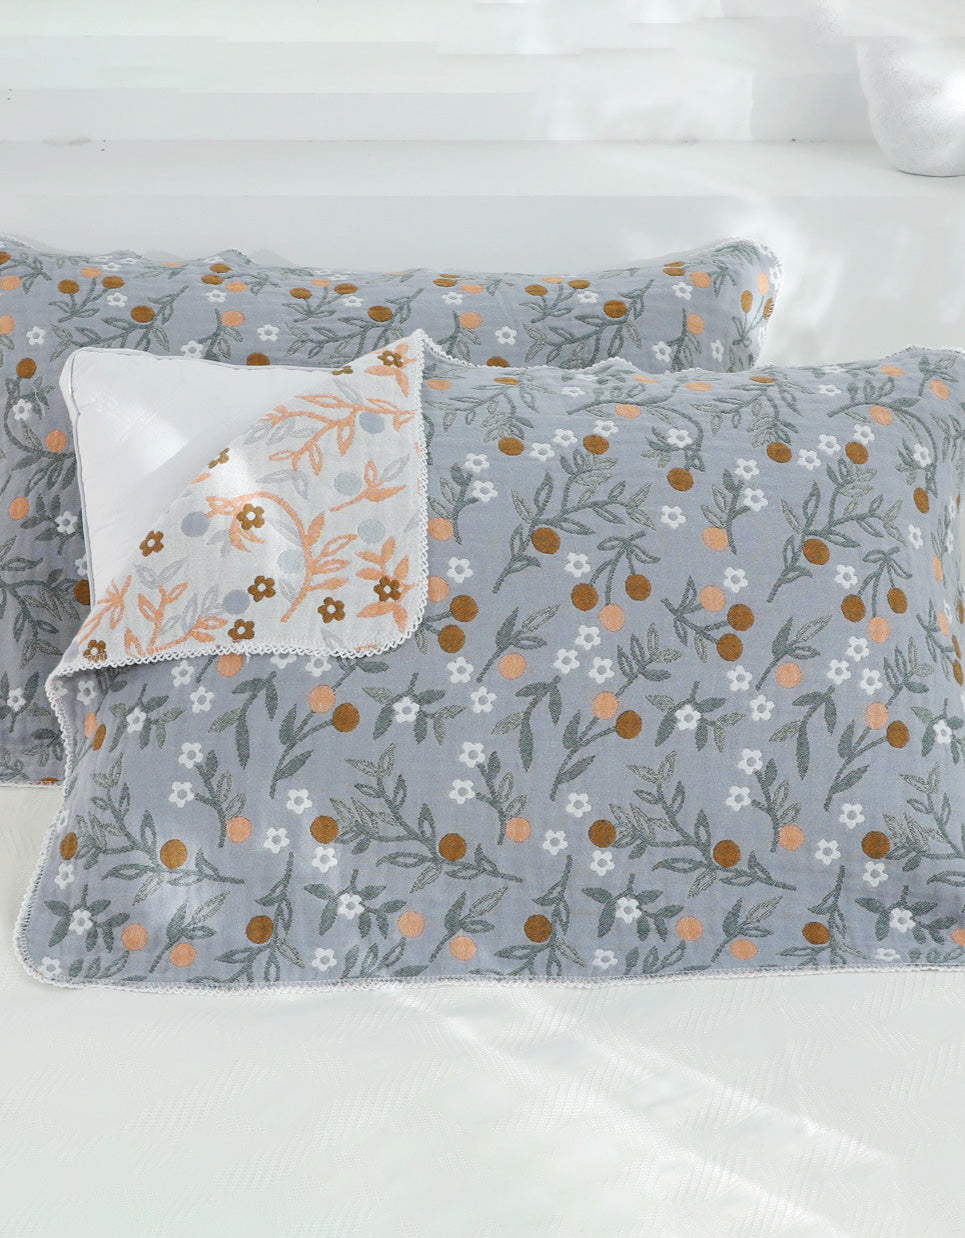 Floral Cotton Gauze Cushion Cover ( 2 PCS)